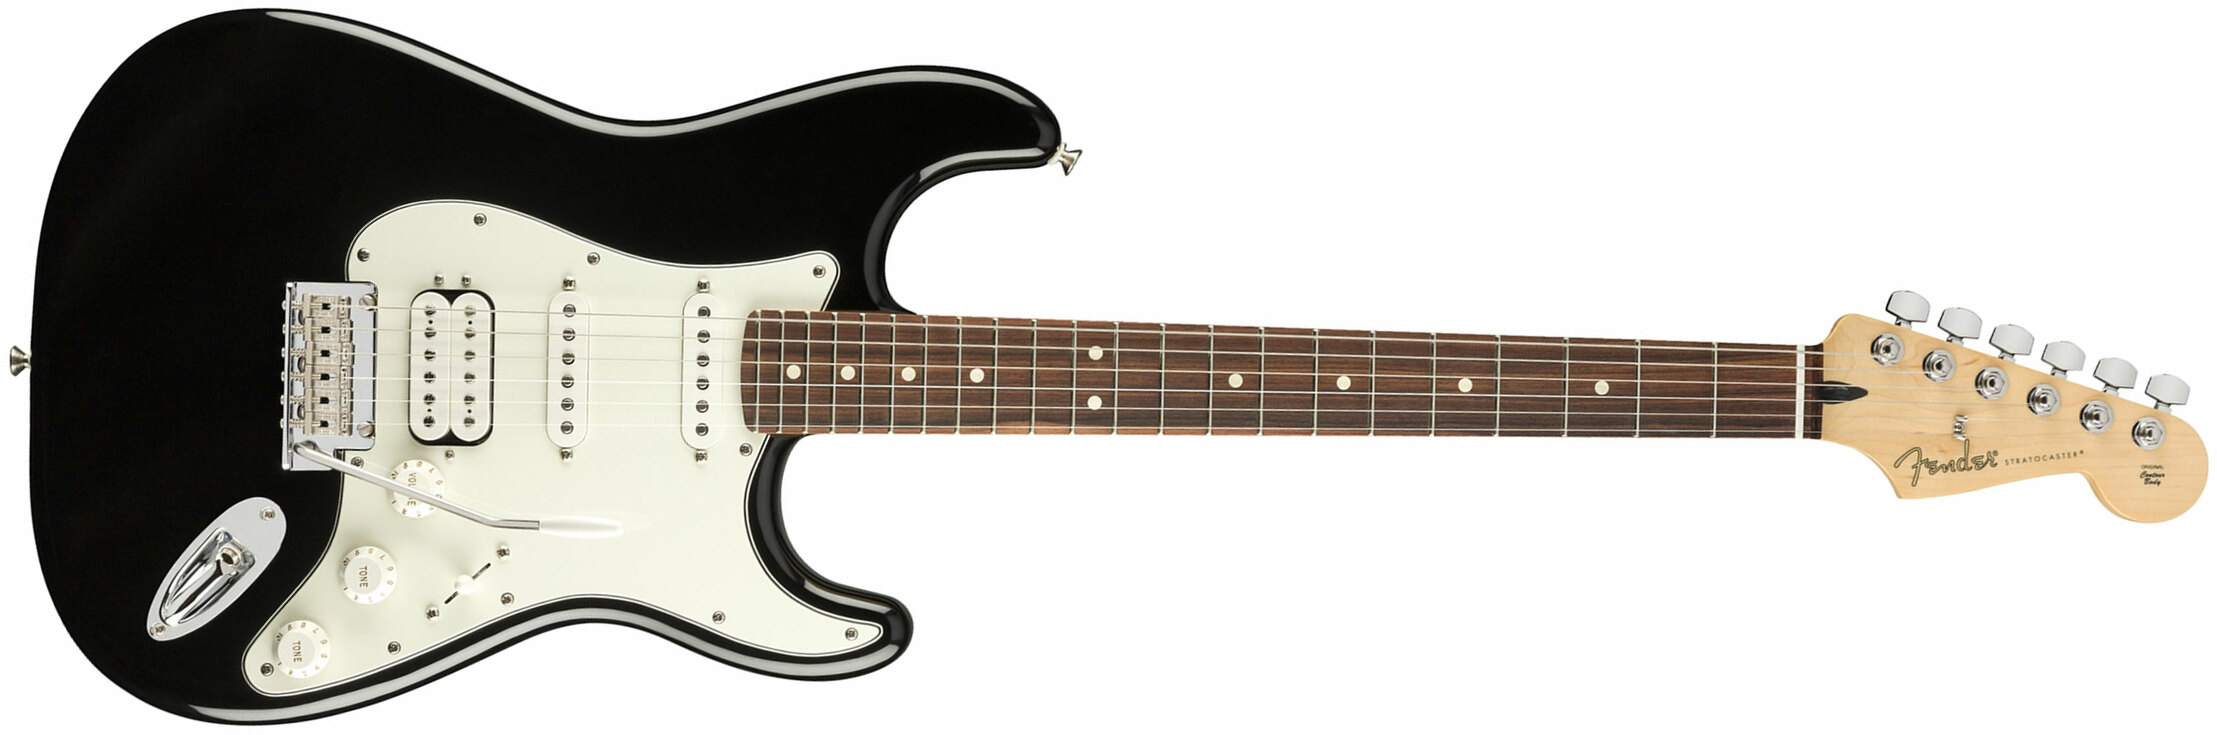 Fender Strat Player Mex Hss Pf - Black - Elektrische gitaar in Str-vorm - Main picture